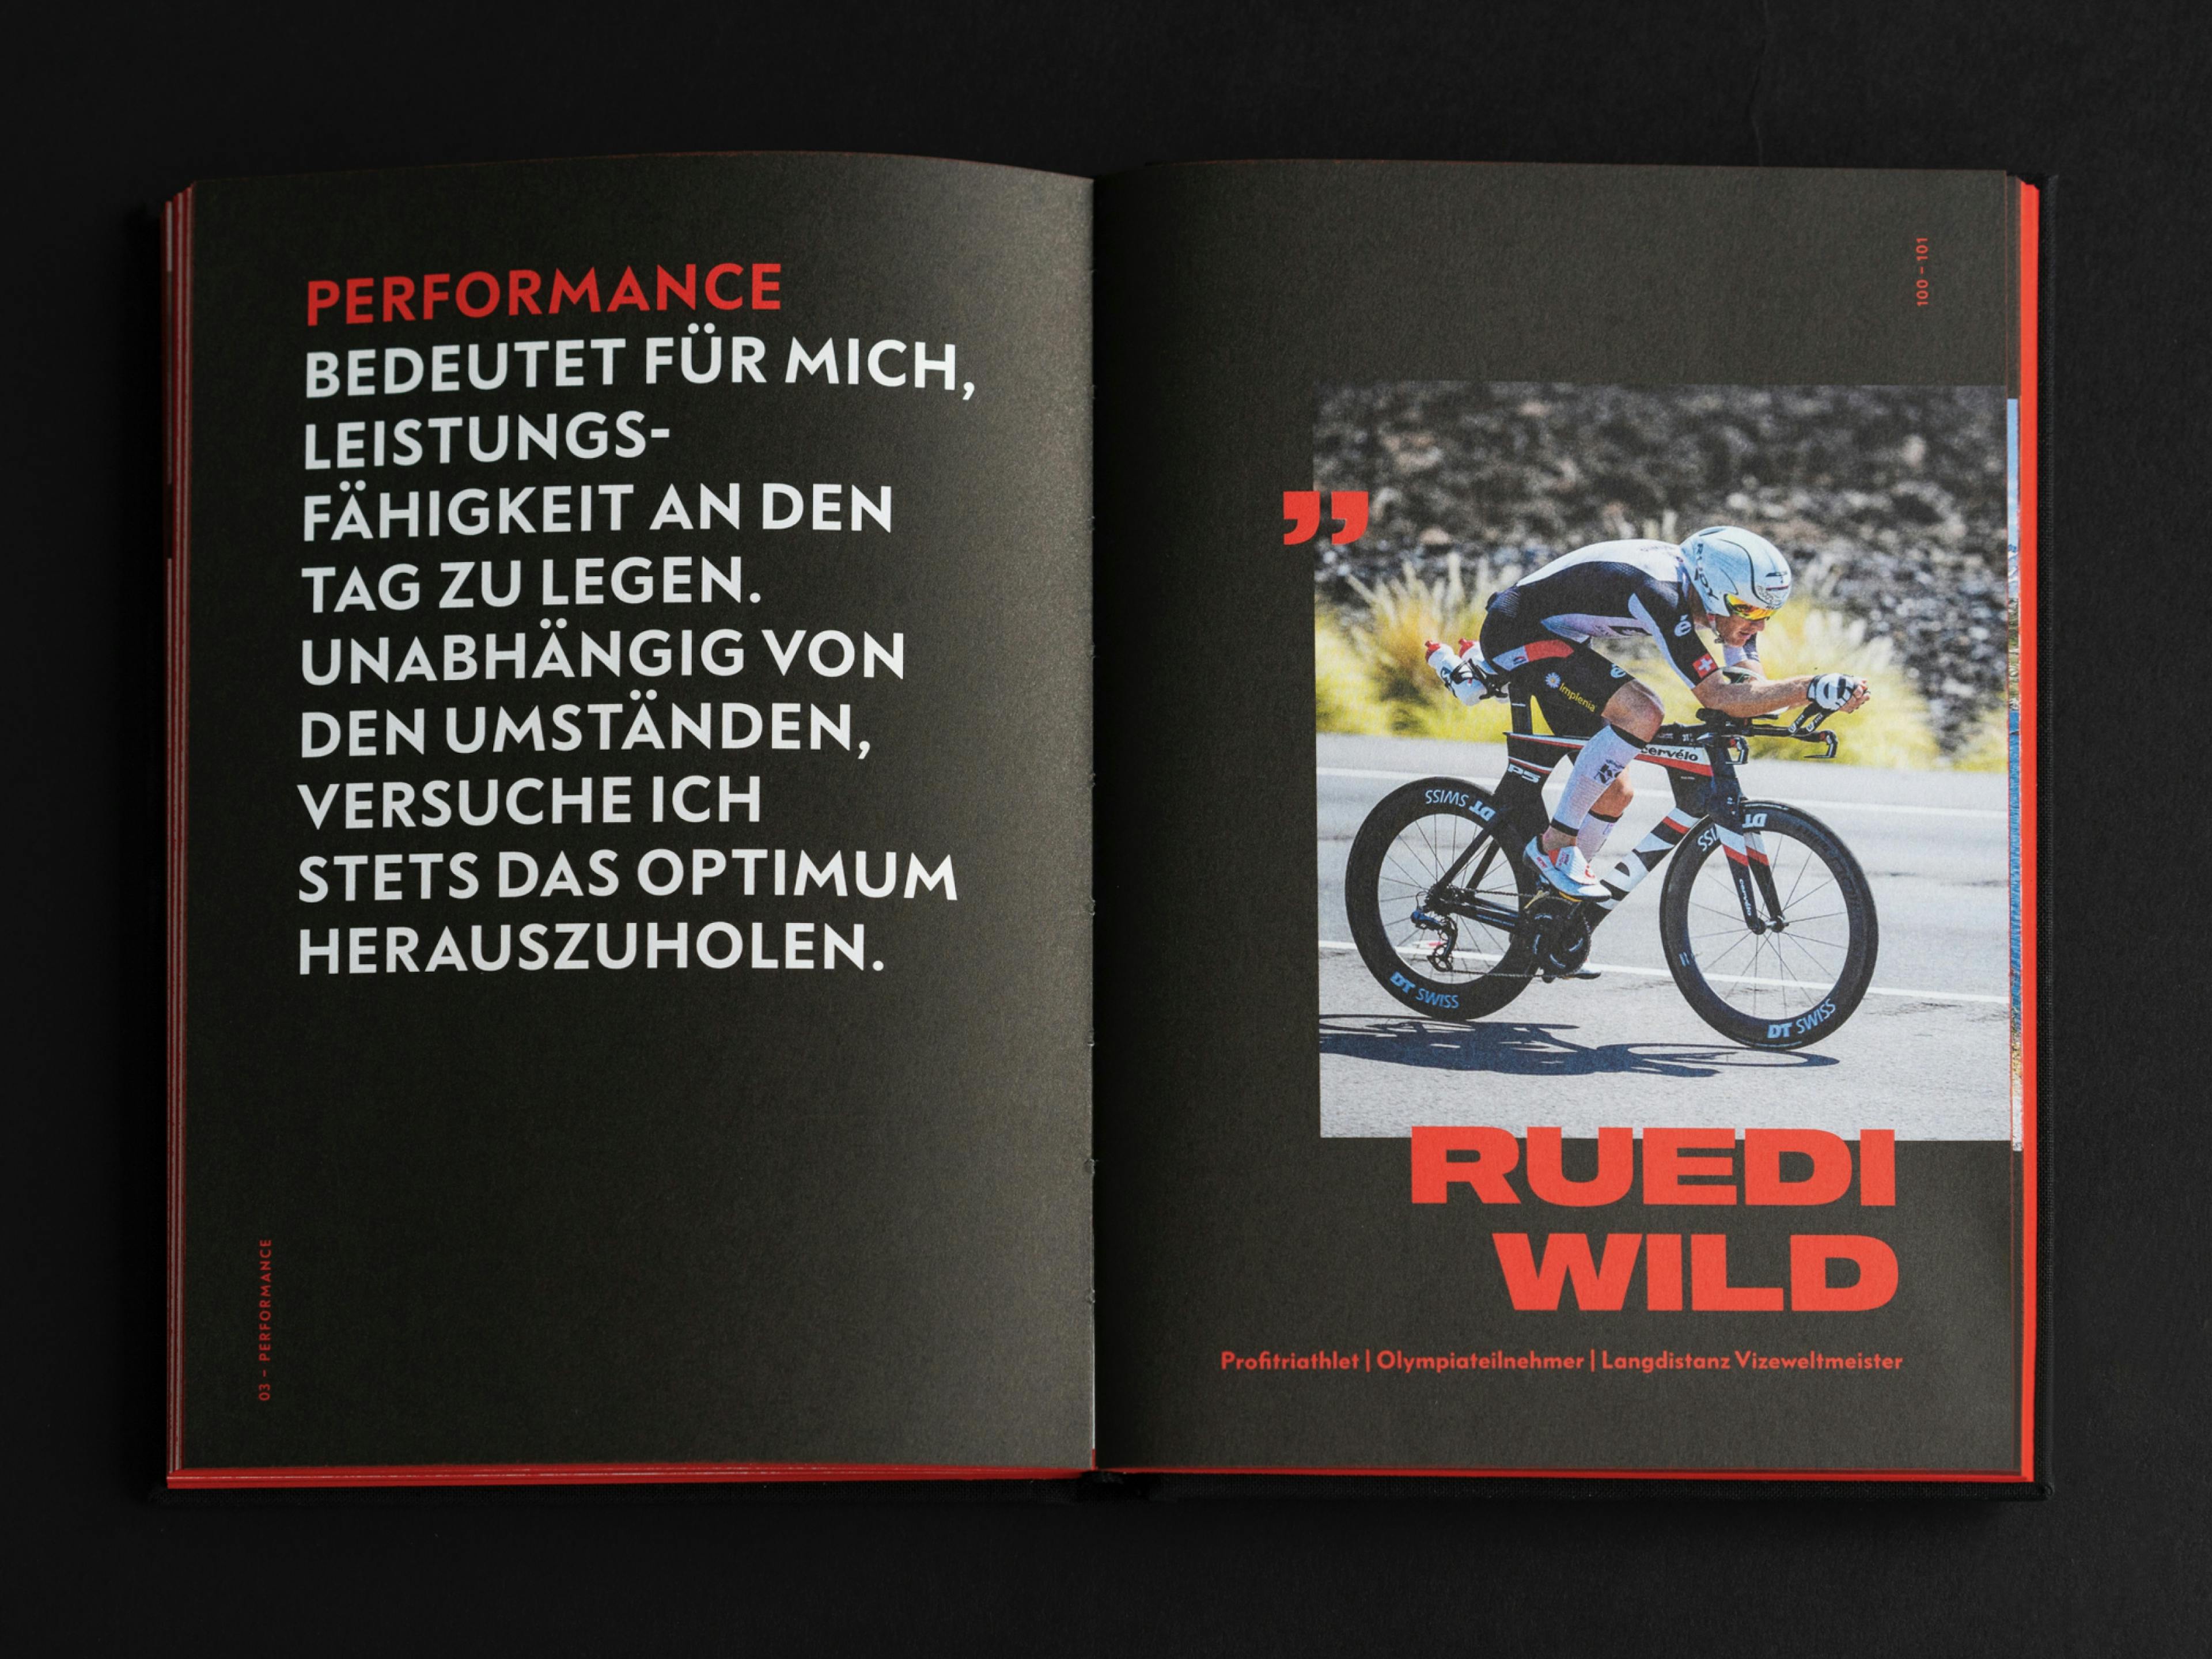 Doppelseite des skinfit brandbooks mit einem Zitat von Ruedi Wild zum Thema Performance © gm gobiq